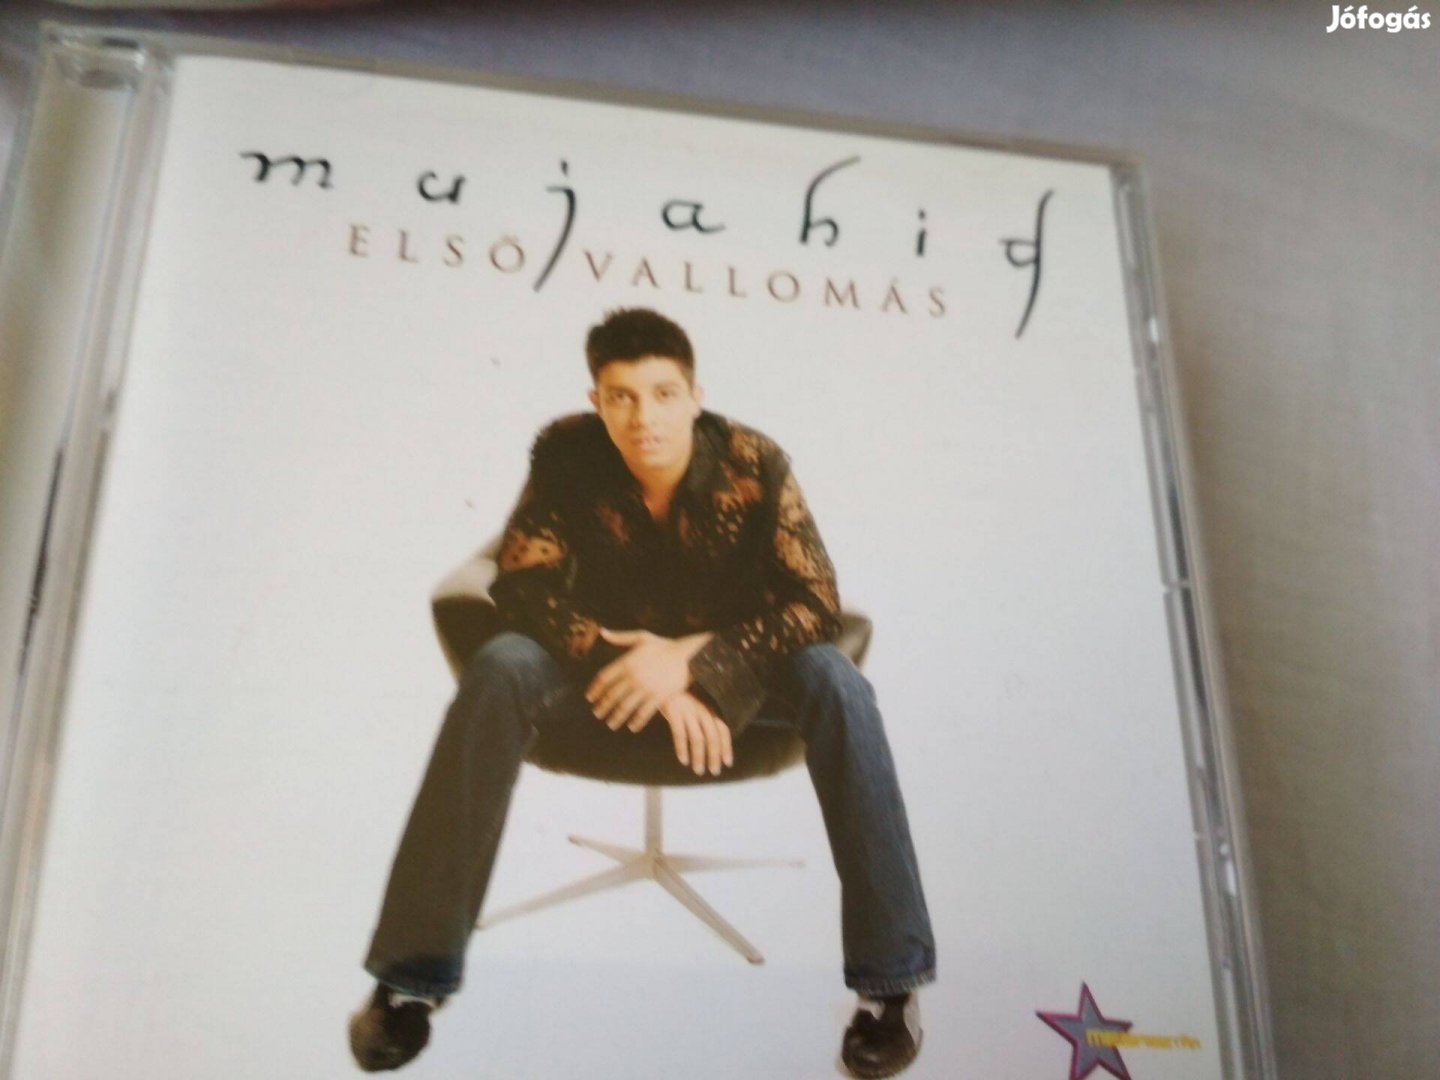 Muhahid Első vallomás CD eladó